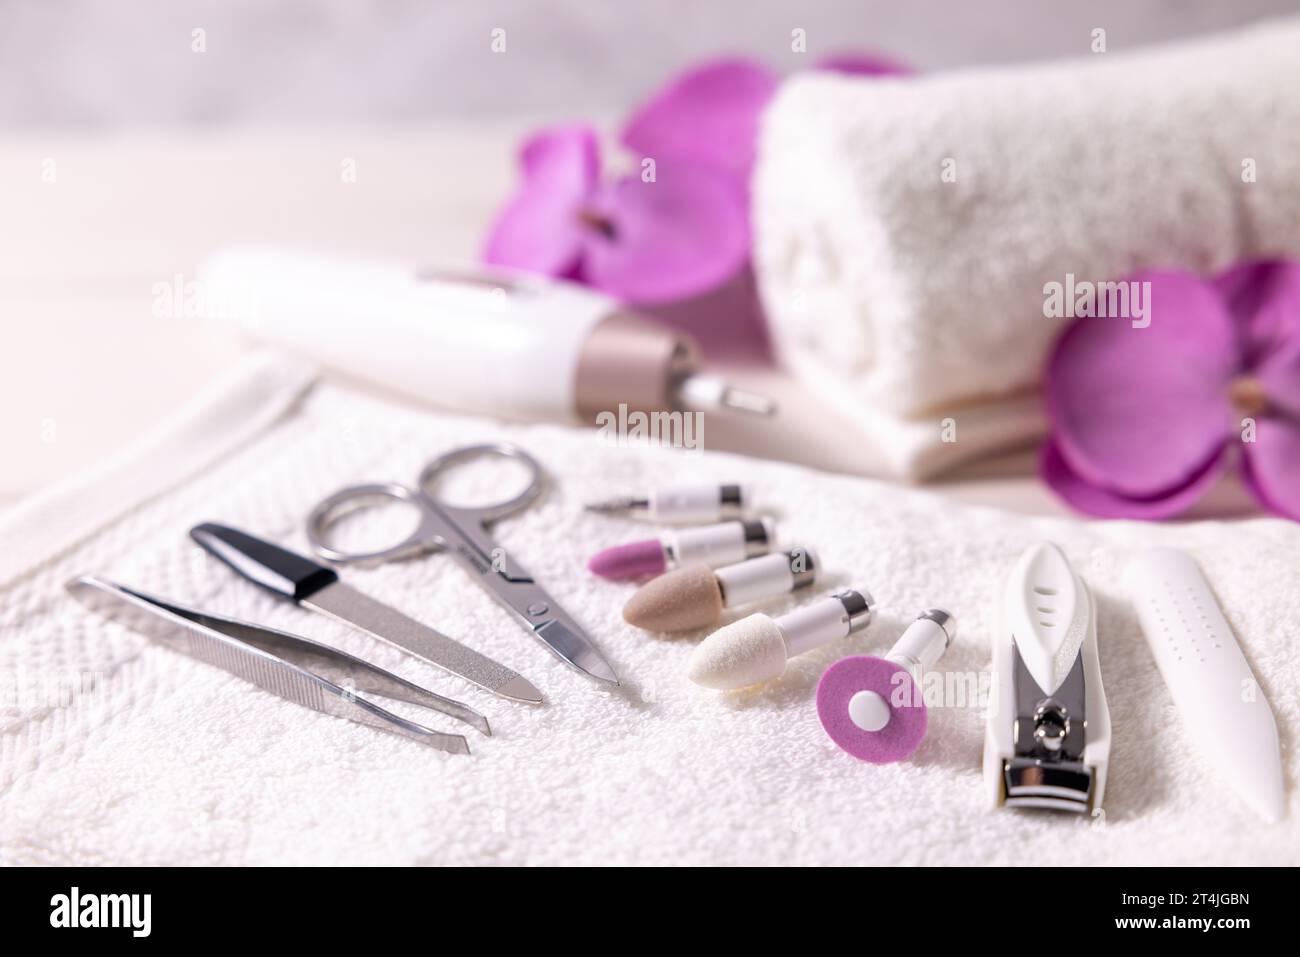 Maniküre-Pediküre-Werkzeugsatz. Nahaufnahme von Nagelbohrern mit anderem Nagelpflegezubehör auf weißem Handtuch. Schönheitsbehandlung Stockfoto